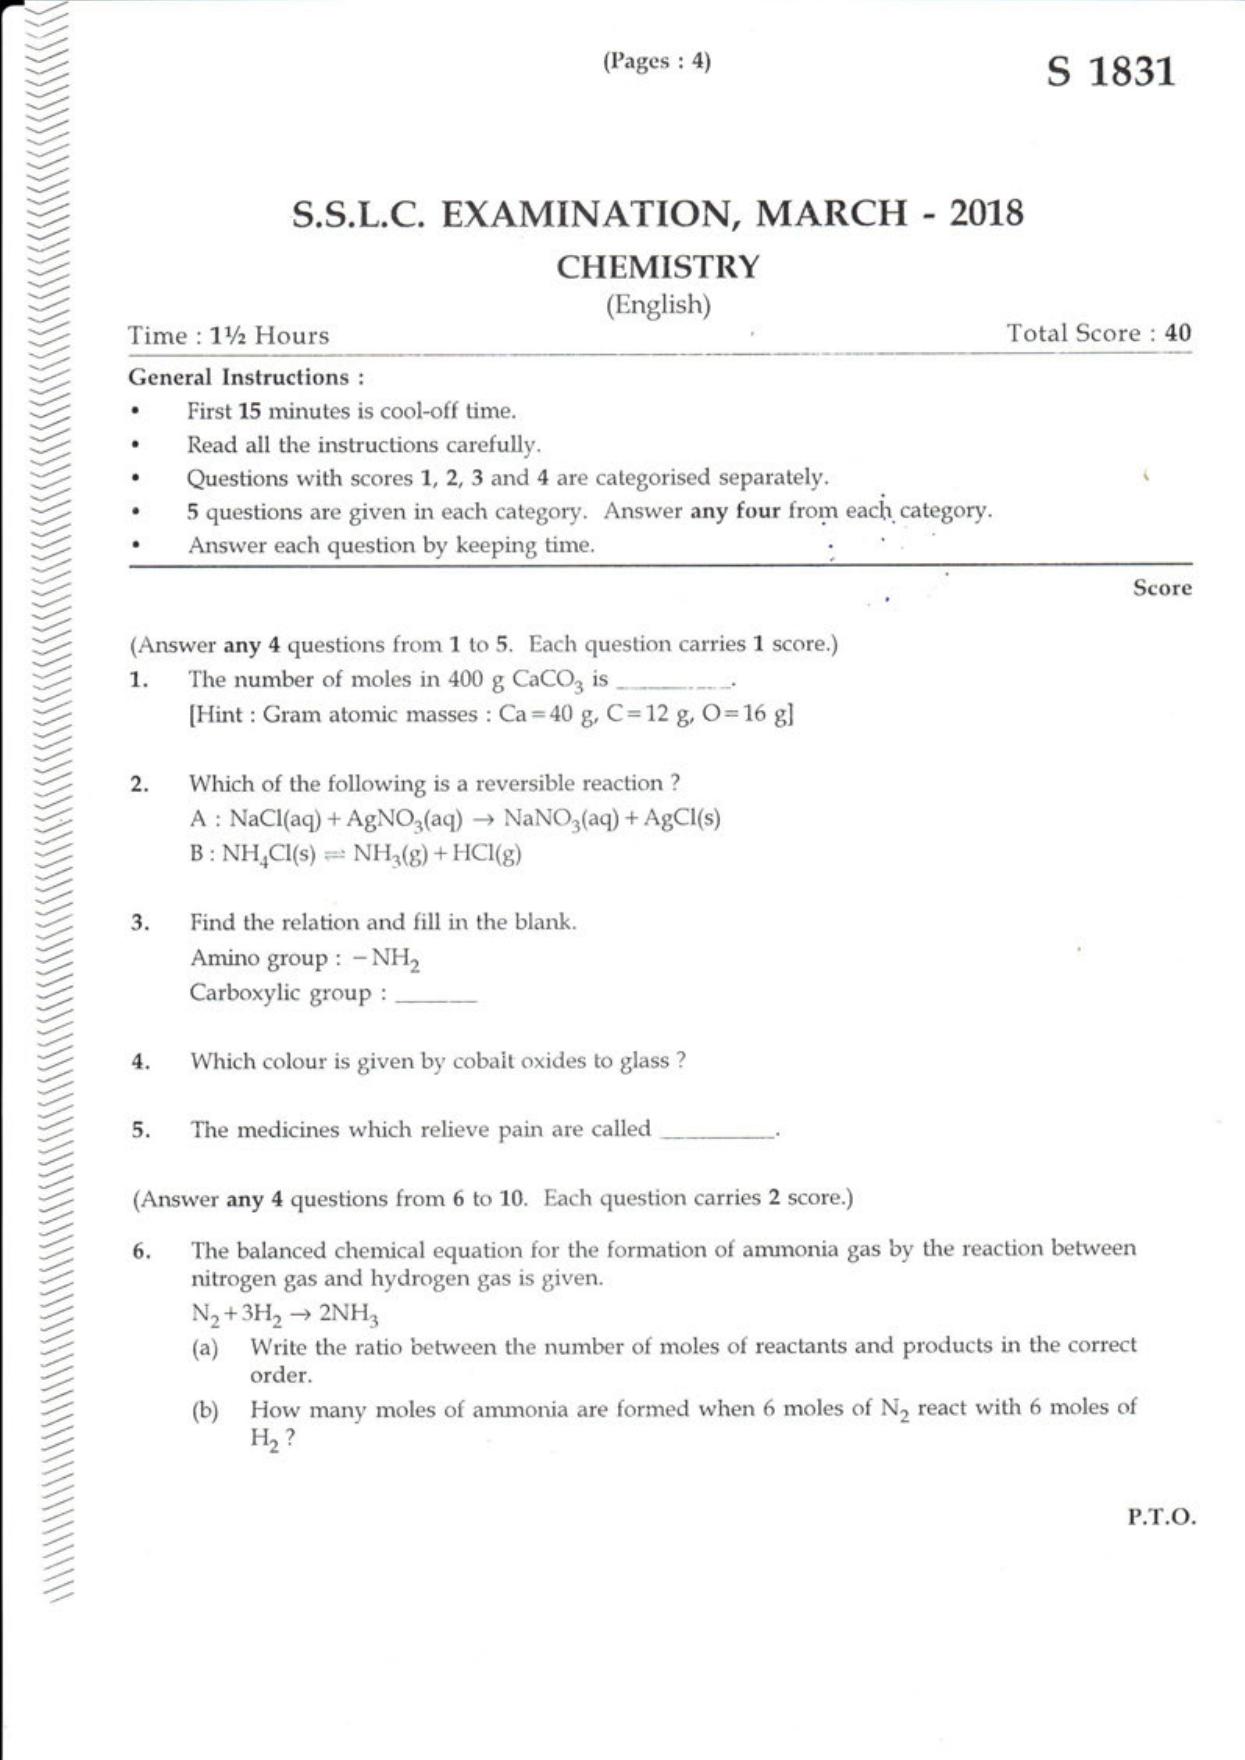 Kerala SSLC 2018 Chemistry (EM) Question Paper - Page 1